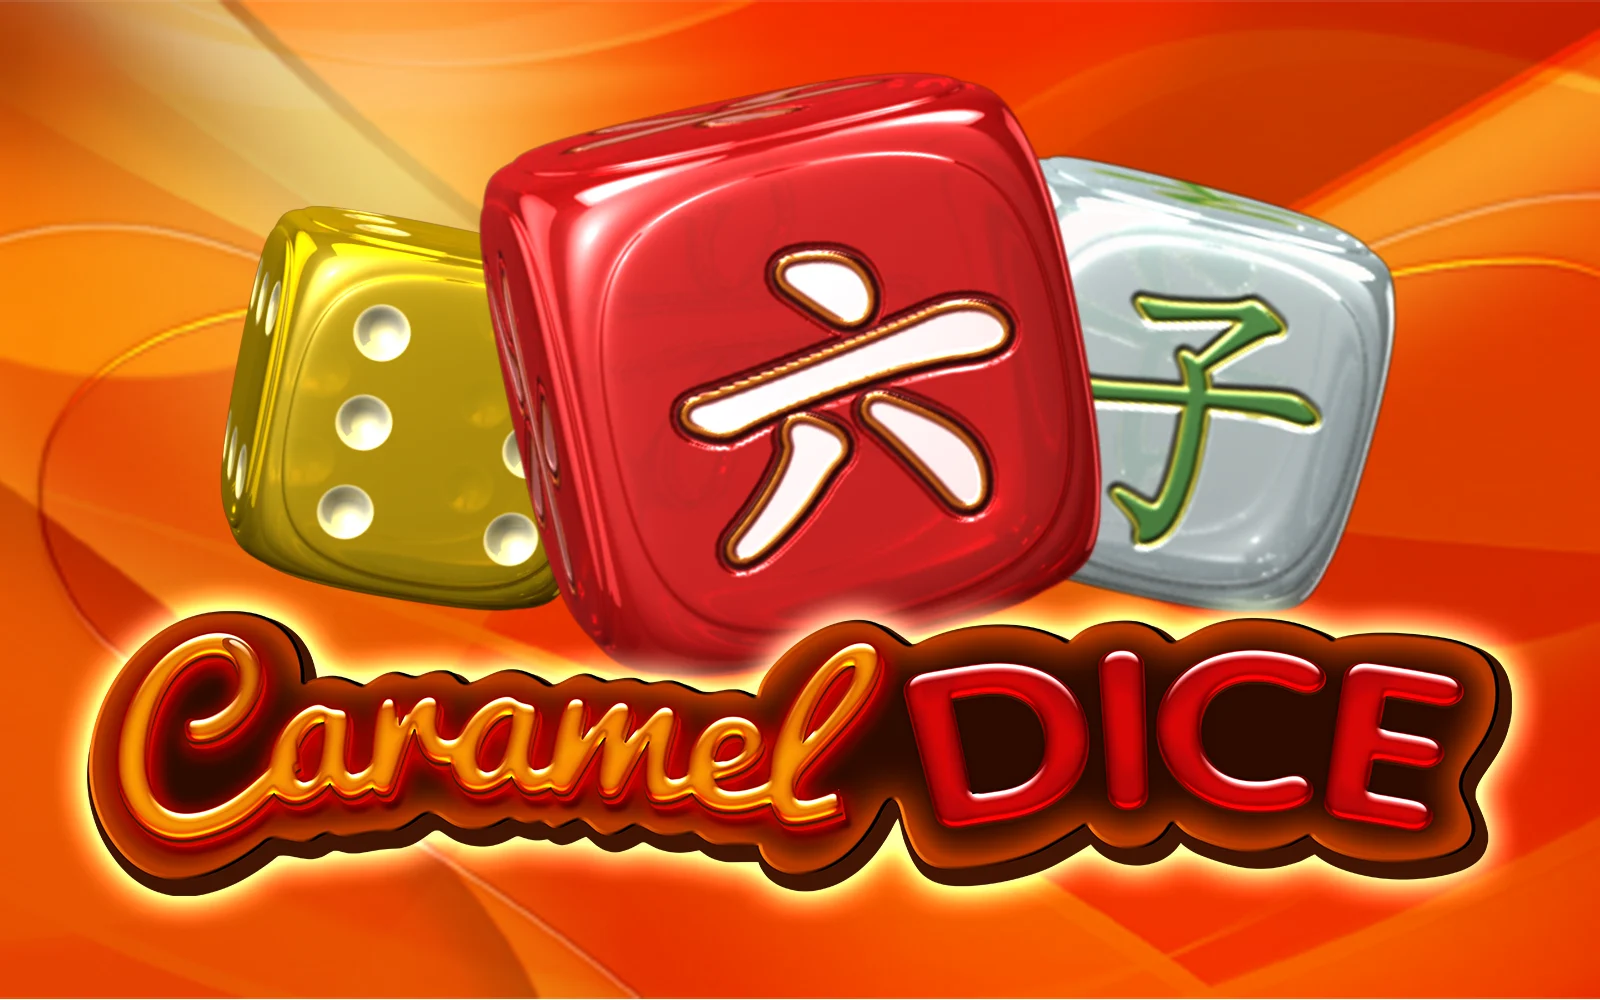 Speel Caramel Dice op Starcasino.be online casino